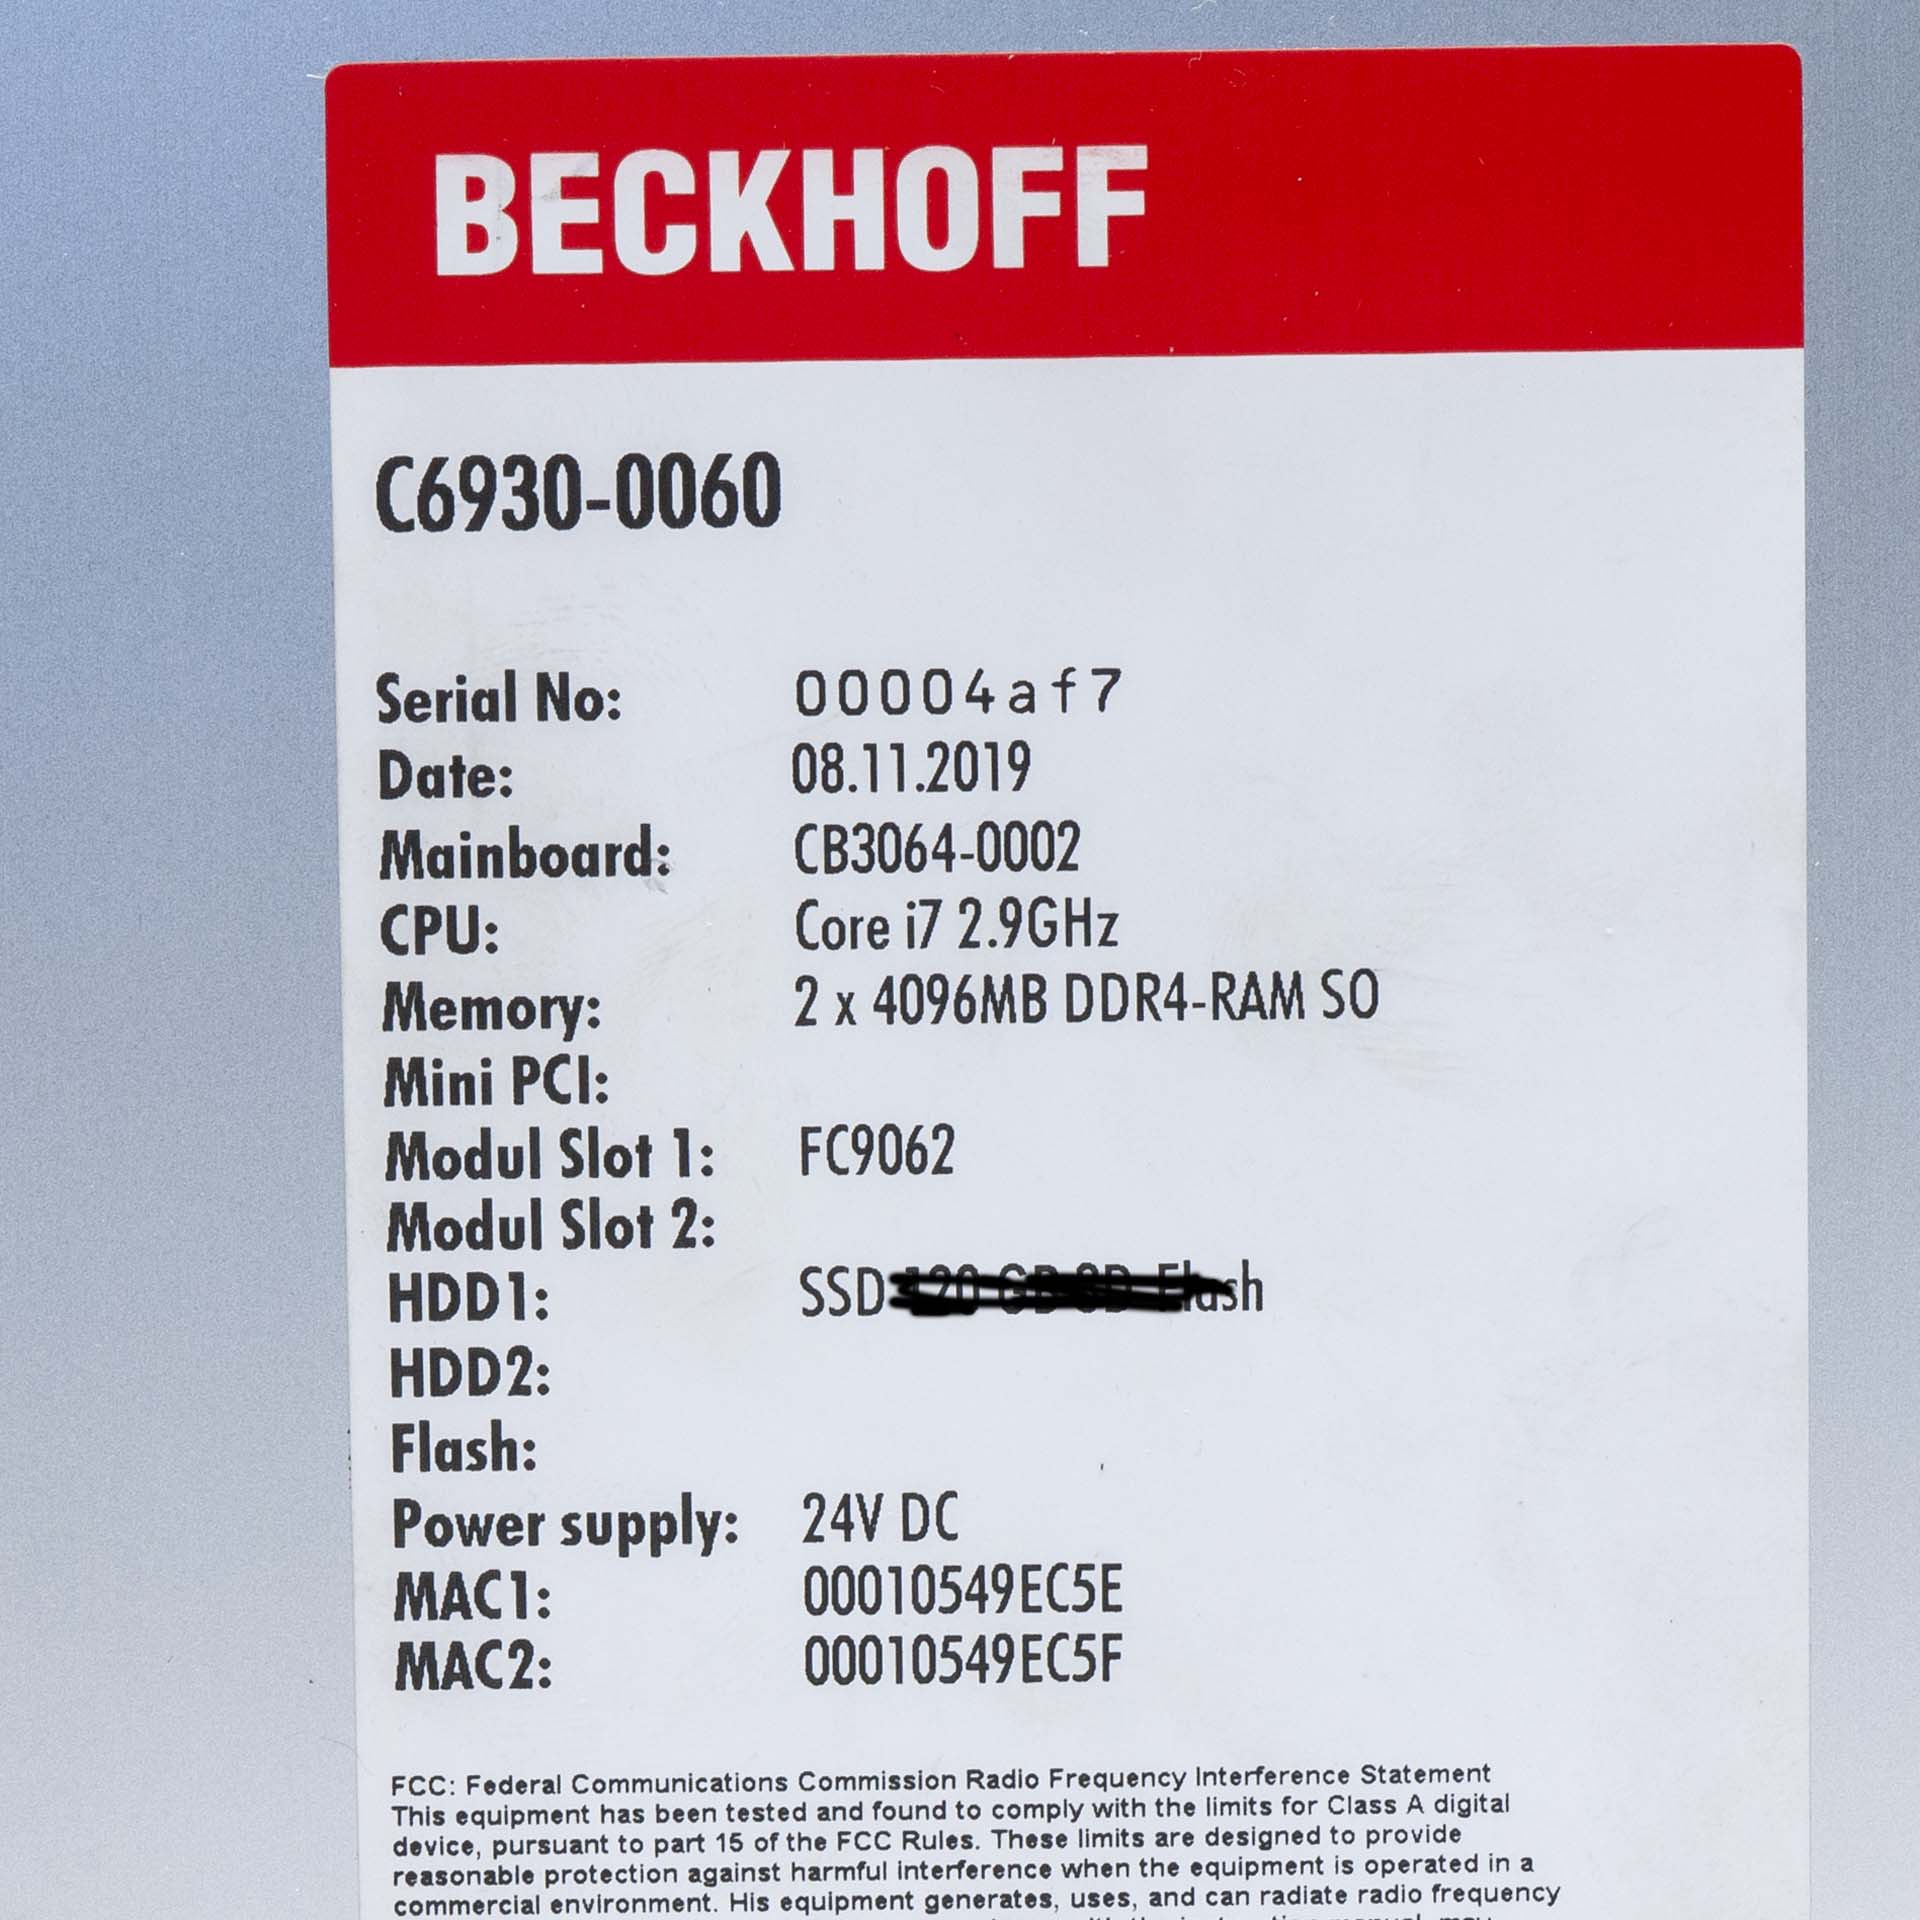 Beckhoff C6930-0060